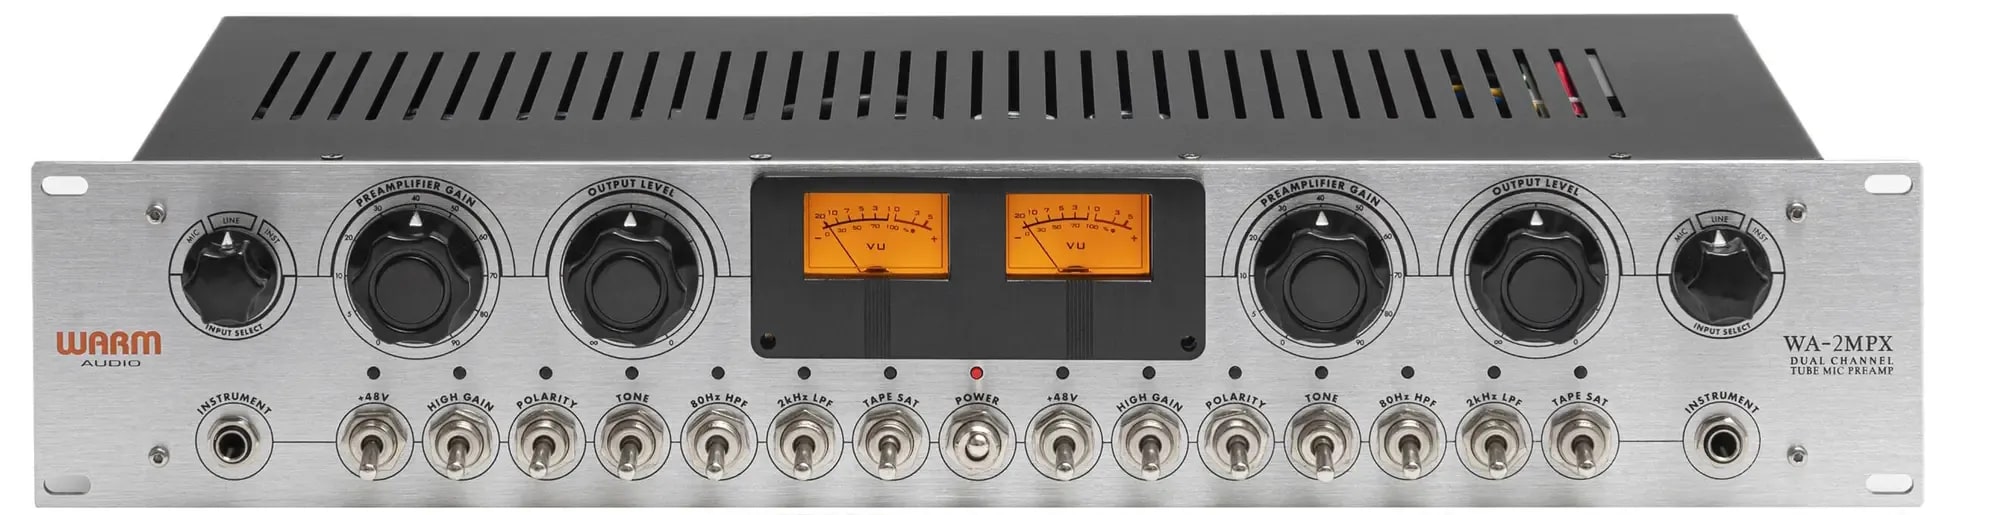 Микрофонные предусилители и микшеры Warm Audio WA-2MPX